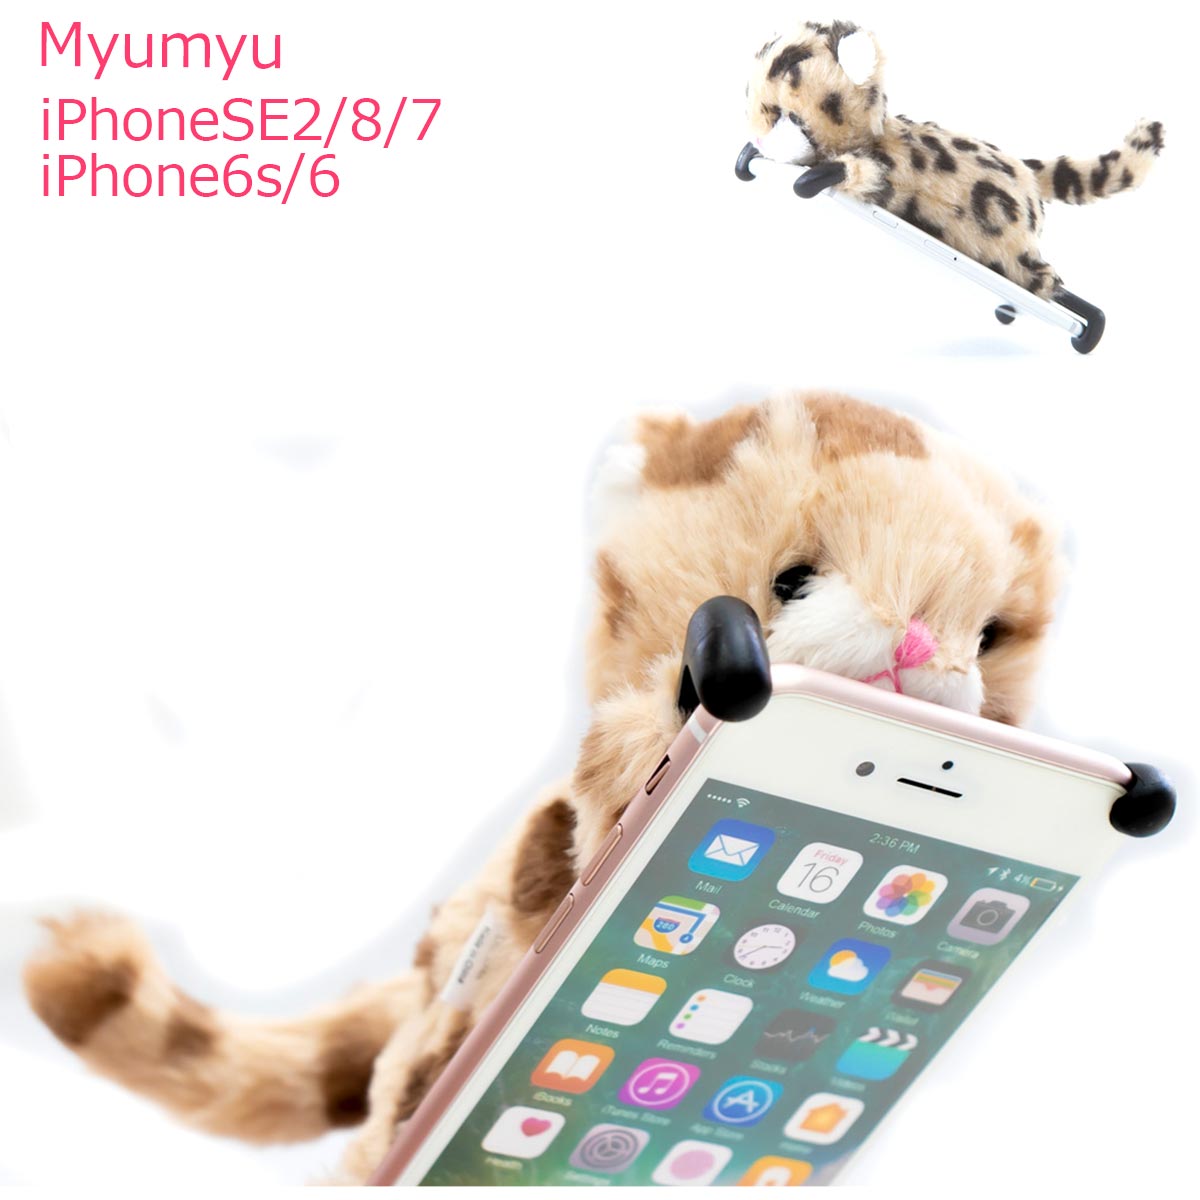 myumyu iPhone 5 5S 5C SE 第一世代 iphone5S ケース ネコ ヒョウ ひょう ダルメシアン 可愛い ぬいぐるみ アイホン …